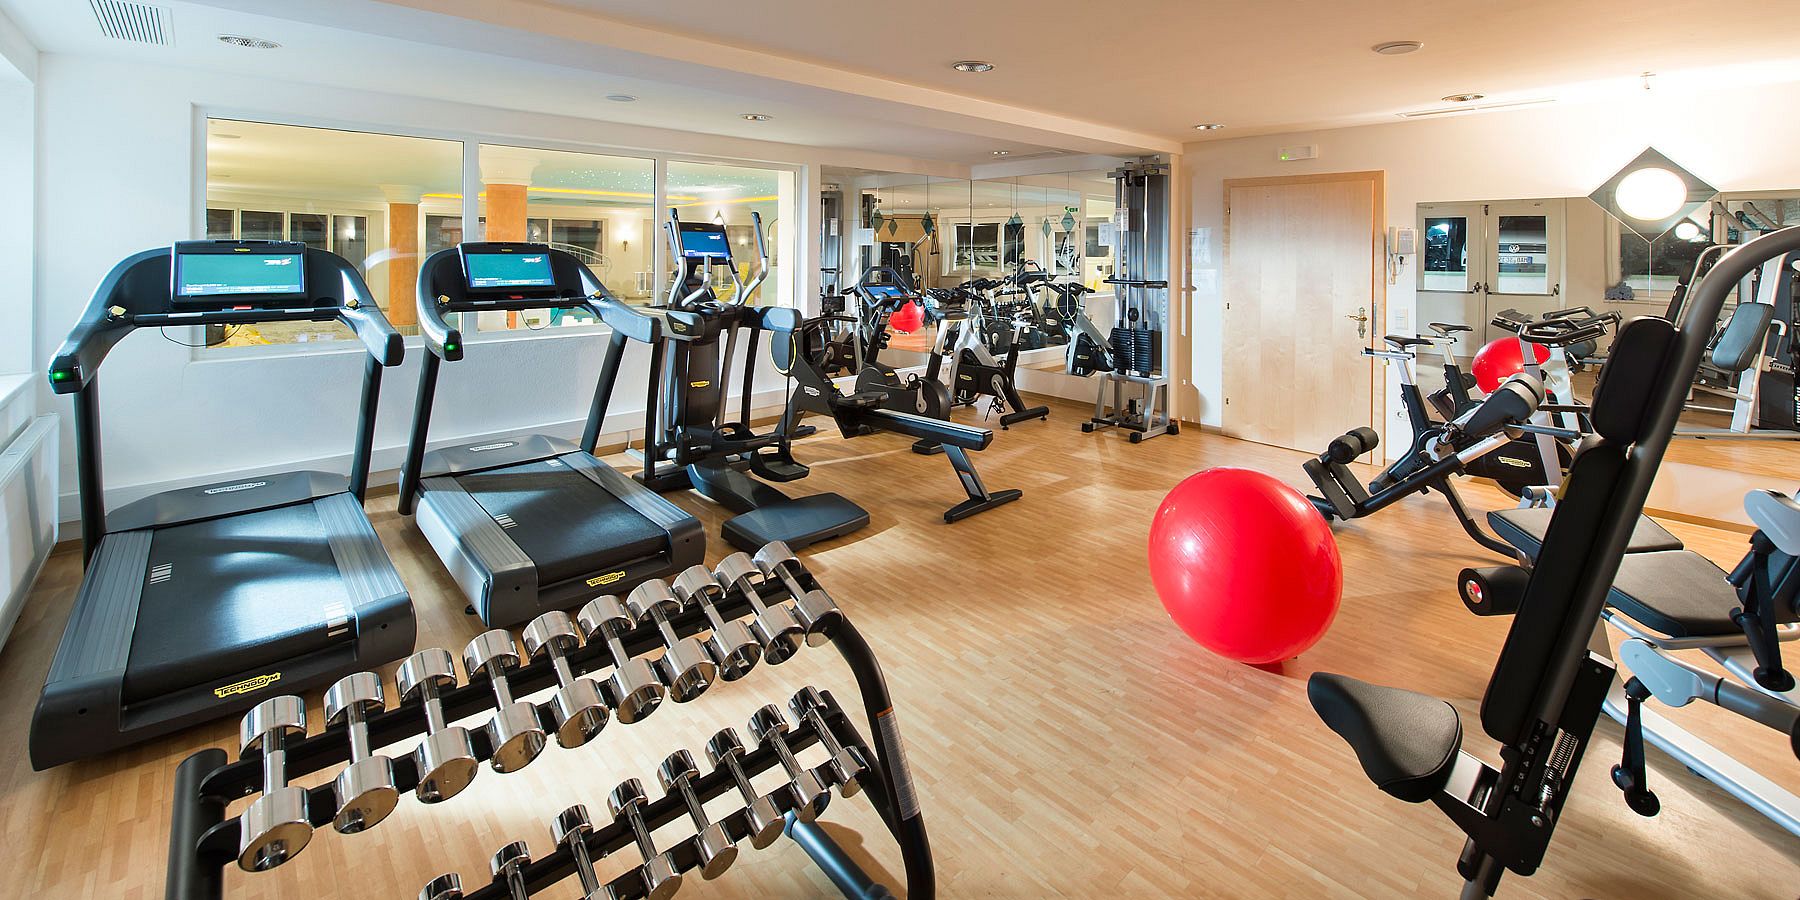 Fitnessraum des Hotels mit Geräten für Cardio-, Kraft- und Ausdauertraining